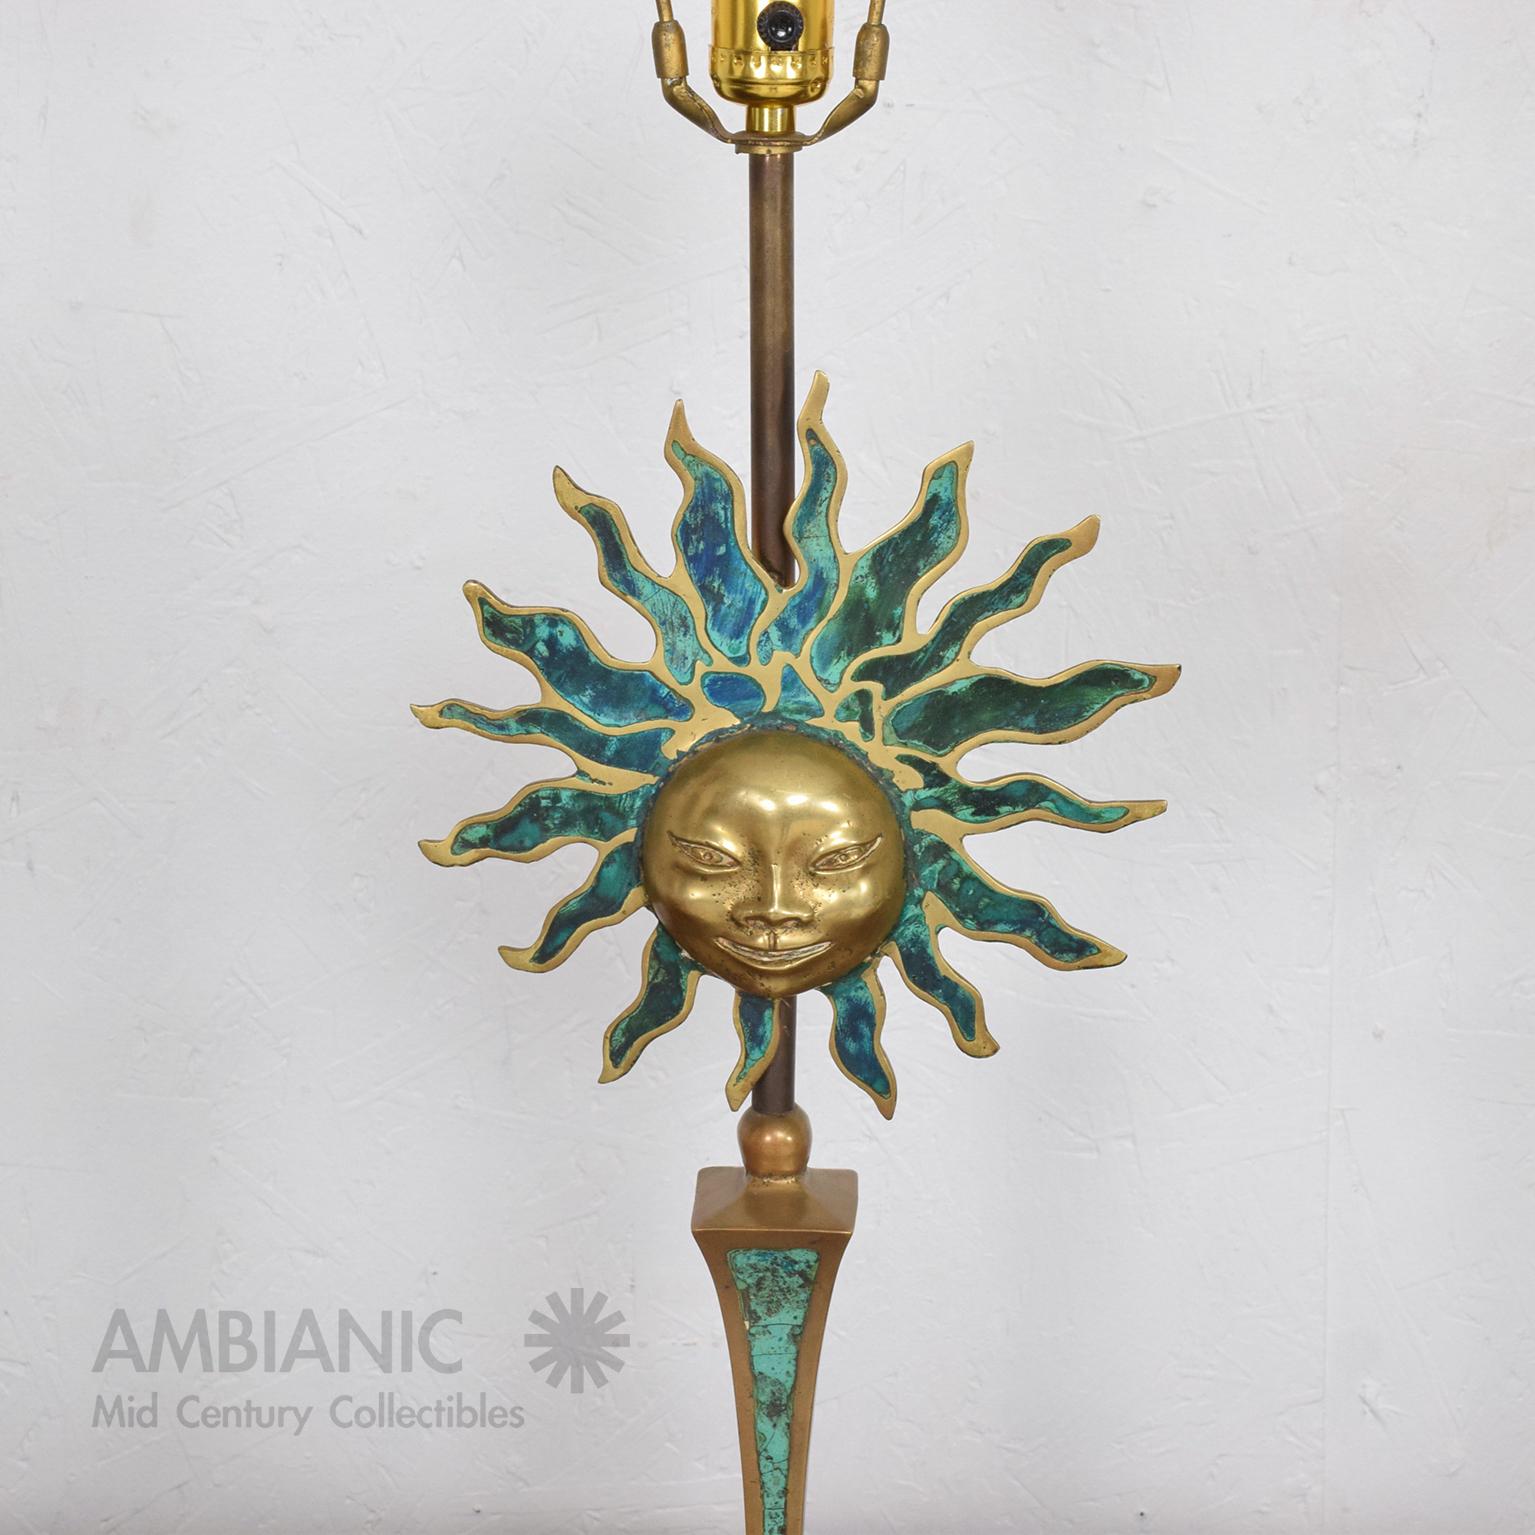 Mid-20th Century Pepe Mendoza Sun Sculpture Table Lamps Bronze and Malachite 1950s Mexico For Sale